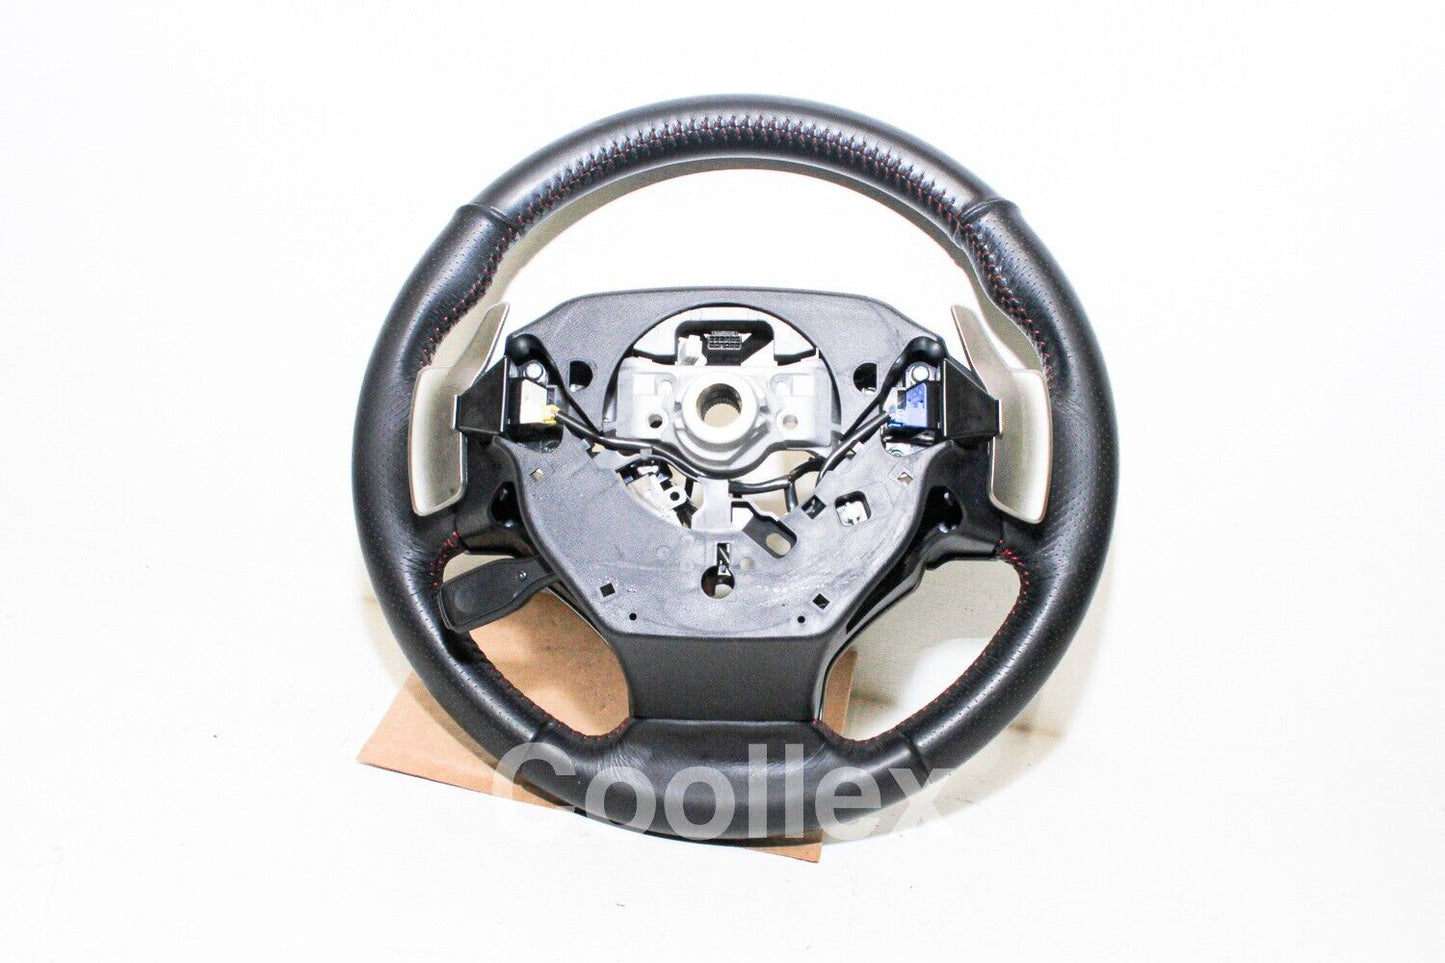 14-17 Lexus Is250 F-Sport Steering Wheel 45100-53471-C1 Oem Used